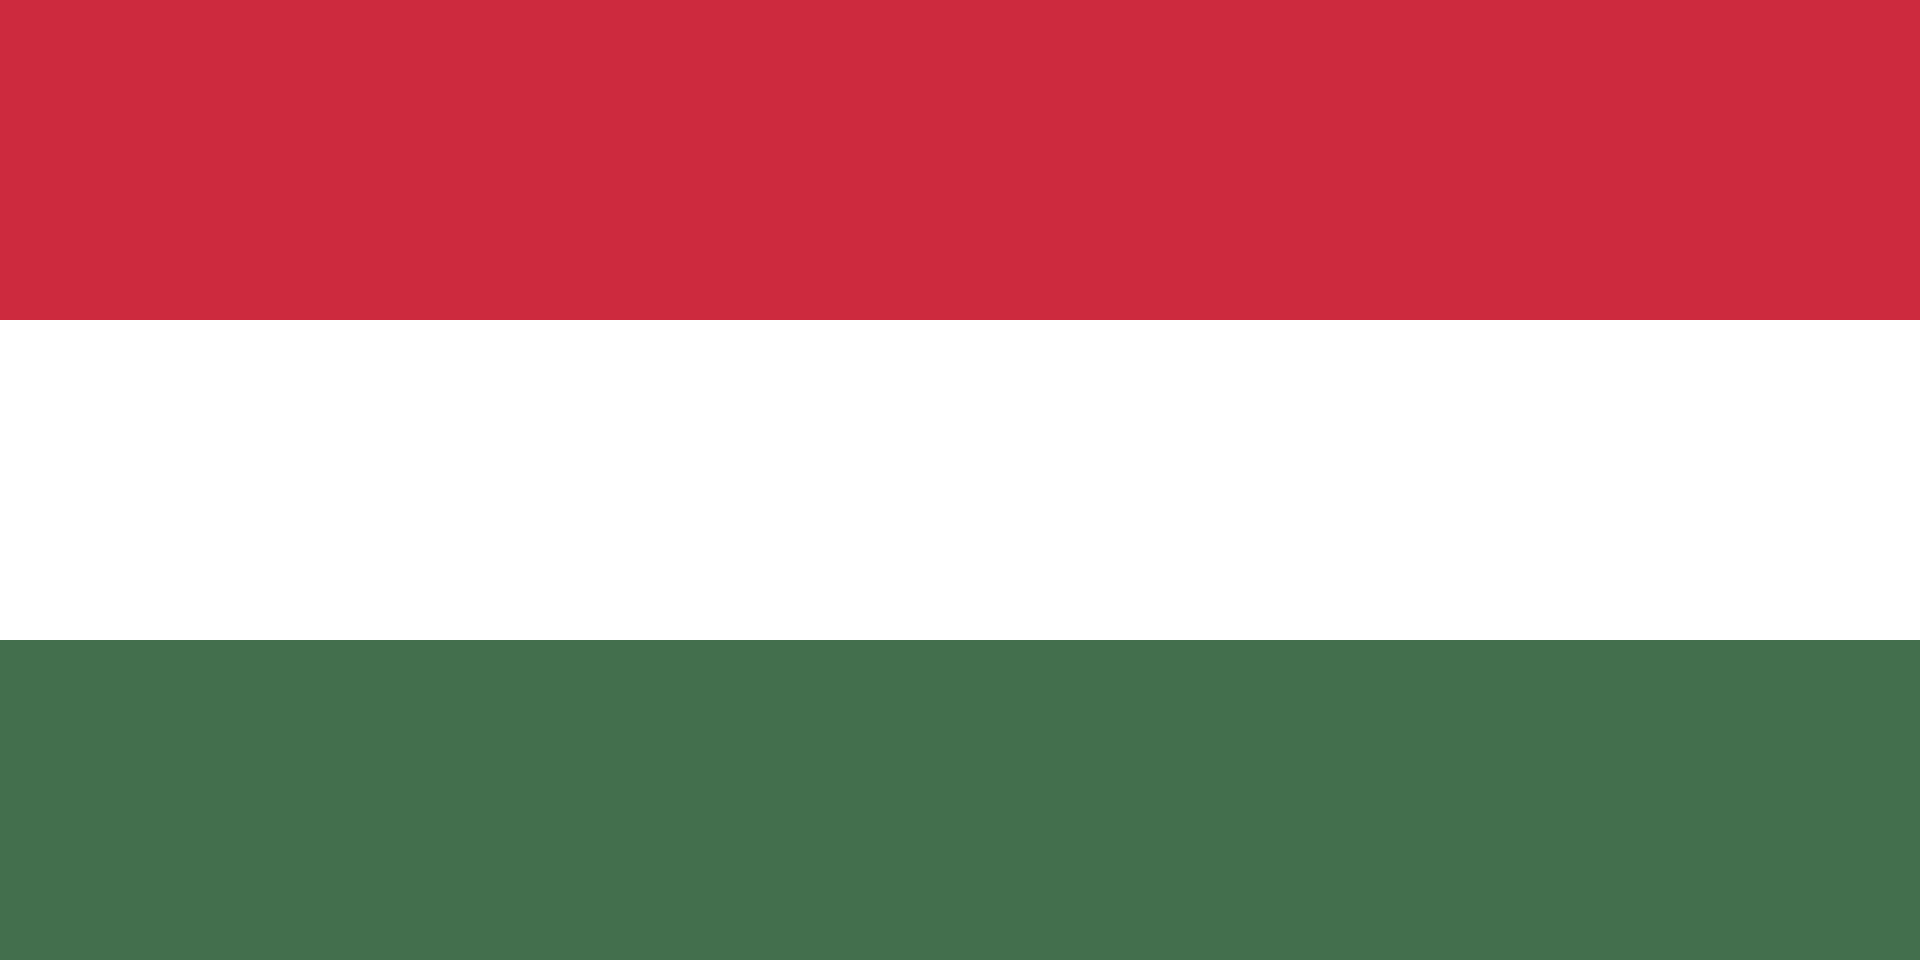 Mit jelképez Magyarország zászlajában a zöld szín?